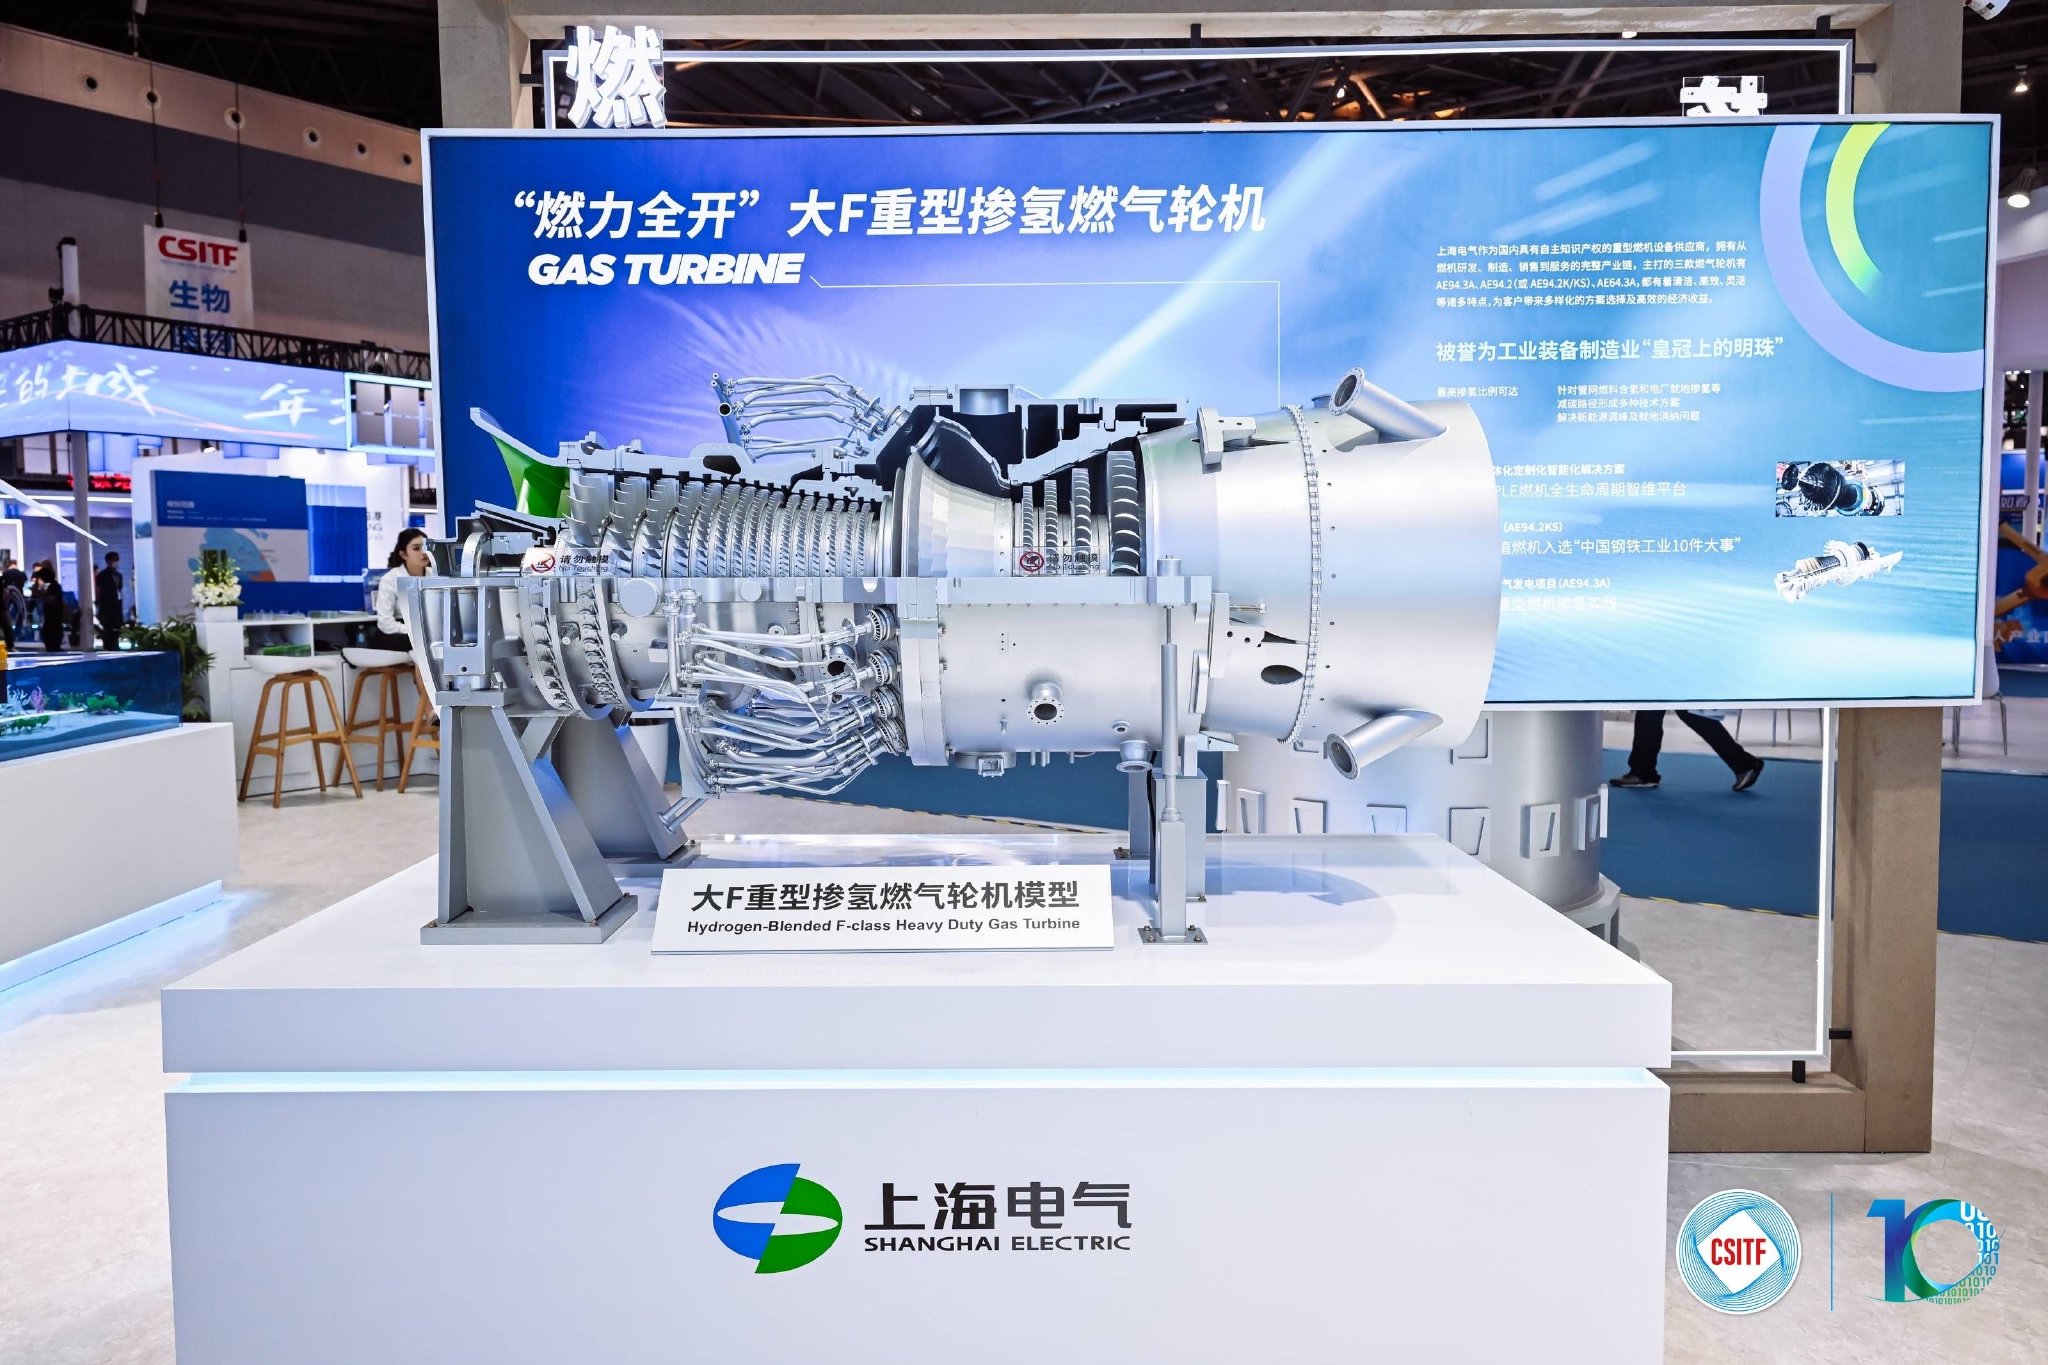 图片说明：在上交会的数字技术、能源低碳技术展区，上海电气带来了一批自主创新的亮点技术。